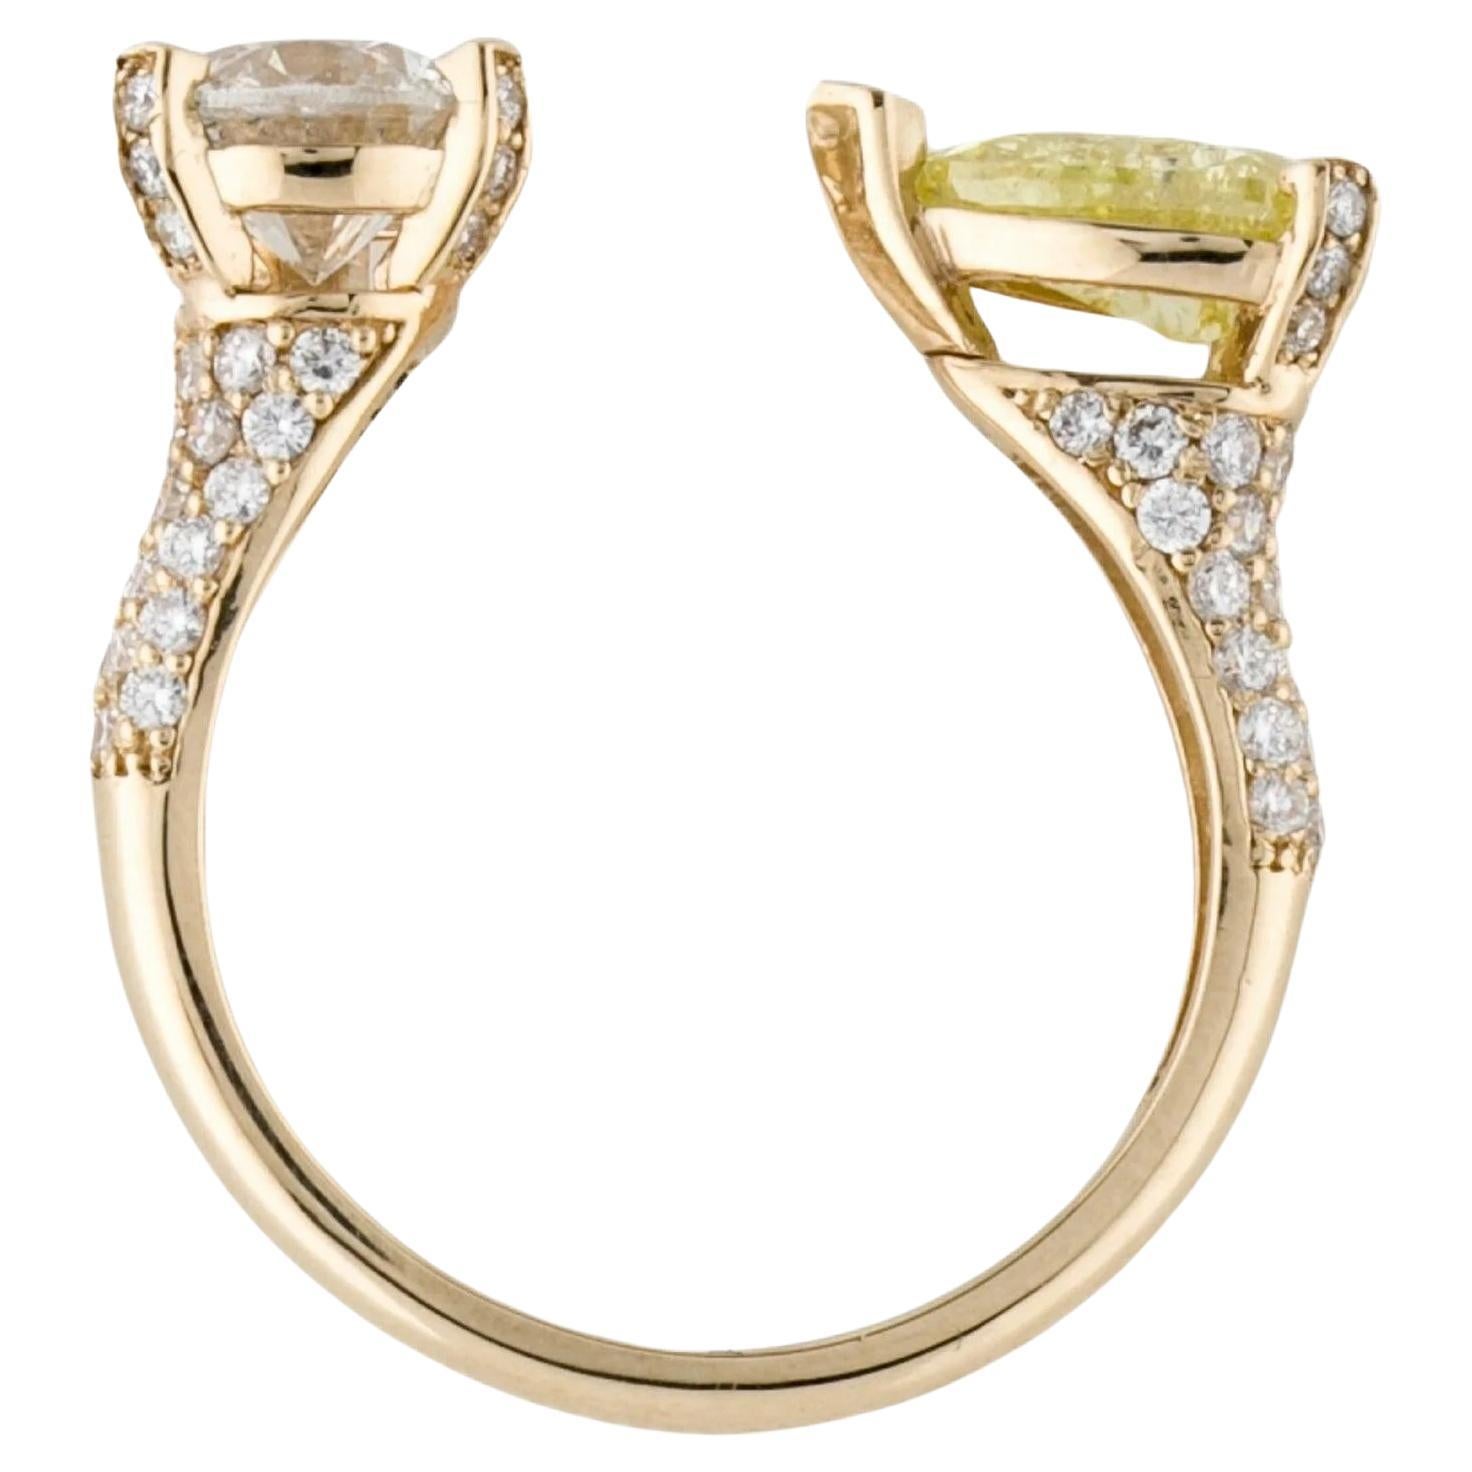 Ein wahrhaft atemberaubender 2,52ctw Diamant *Toi et Moi* Bypass Ring. 
Einzigartige Schönheit.

Mit einem birnenförmigen Diamanten in Fancy Intense Yellow und einem runden Diamanten in Farbe H, akzentuiert durch 66 runde Diamanten im